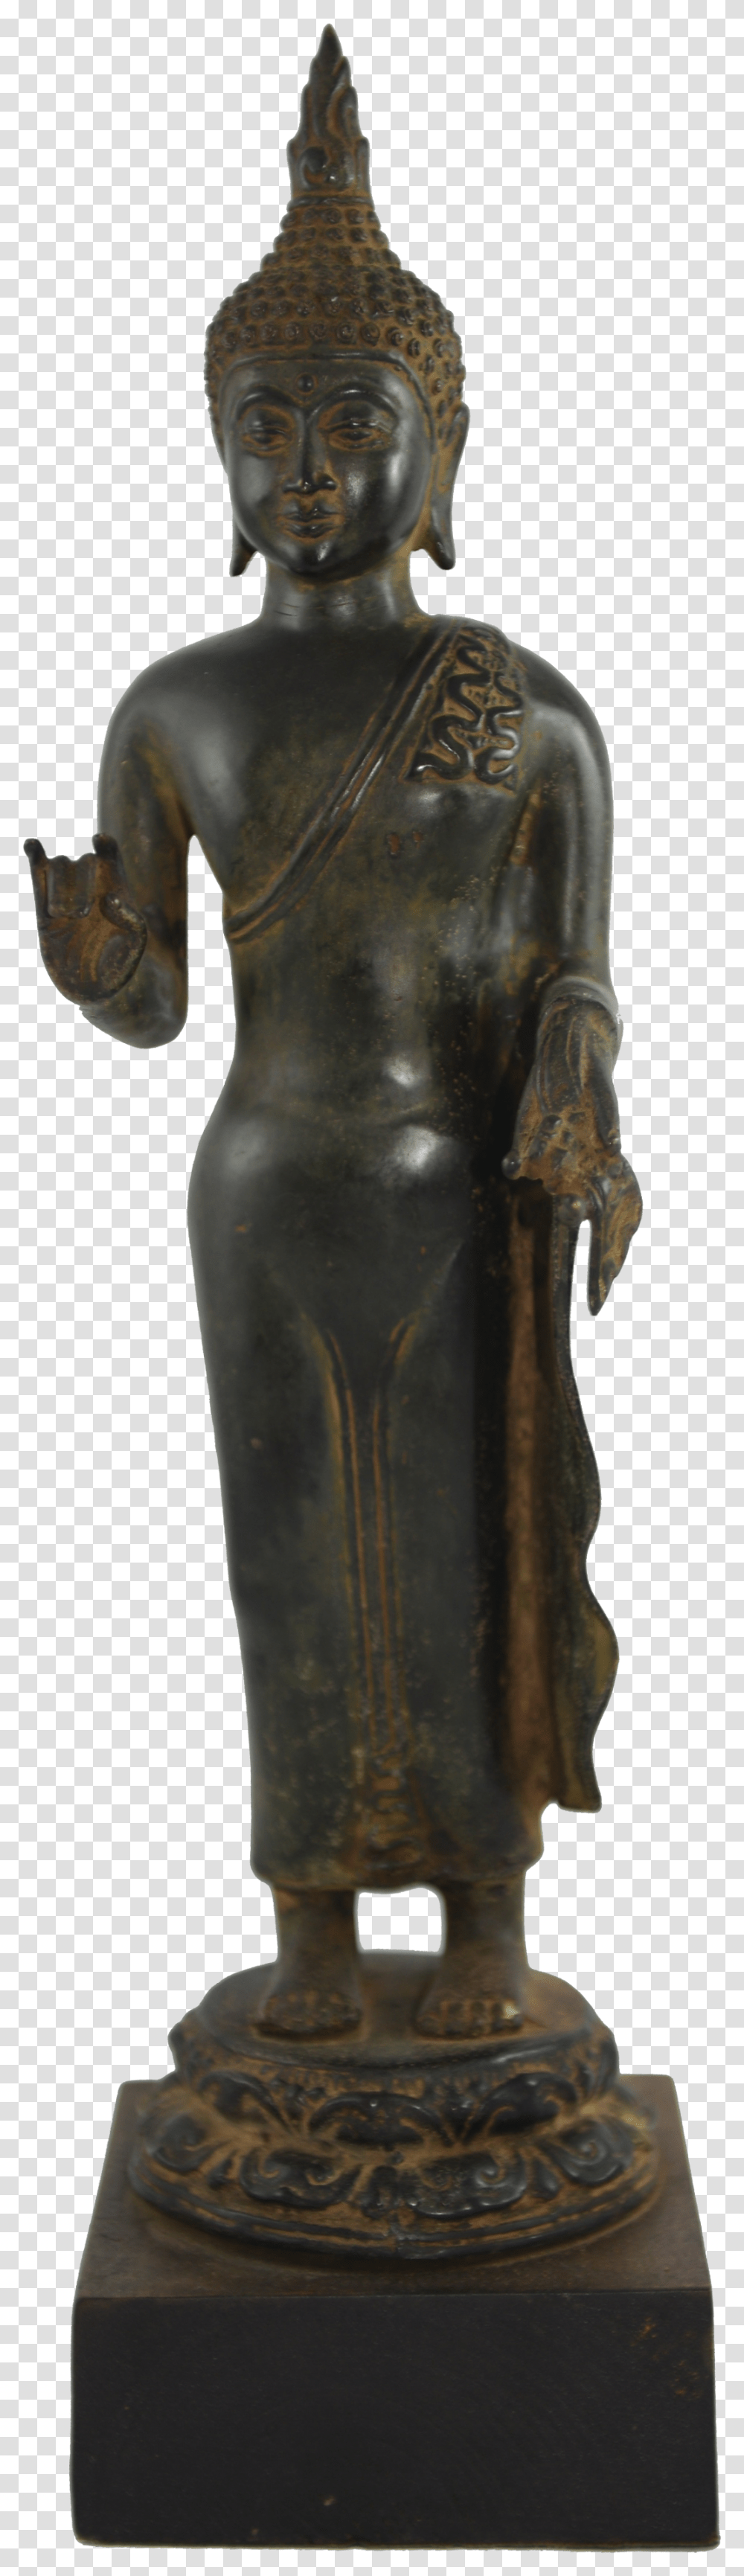 Buddha Statue Bronze Sculpture, Apparel, Torso Transparent Png